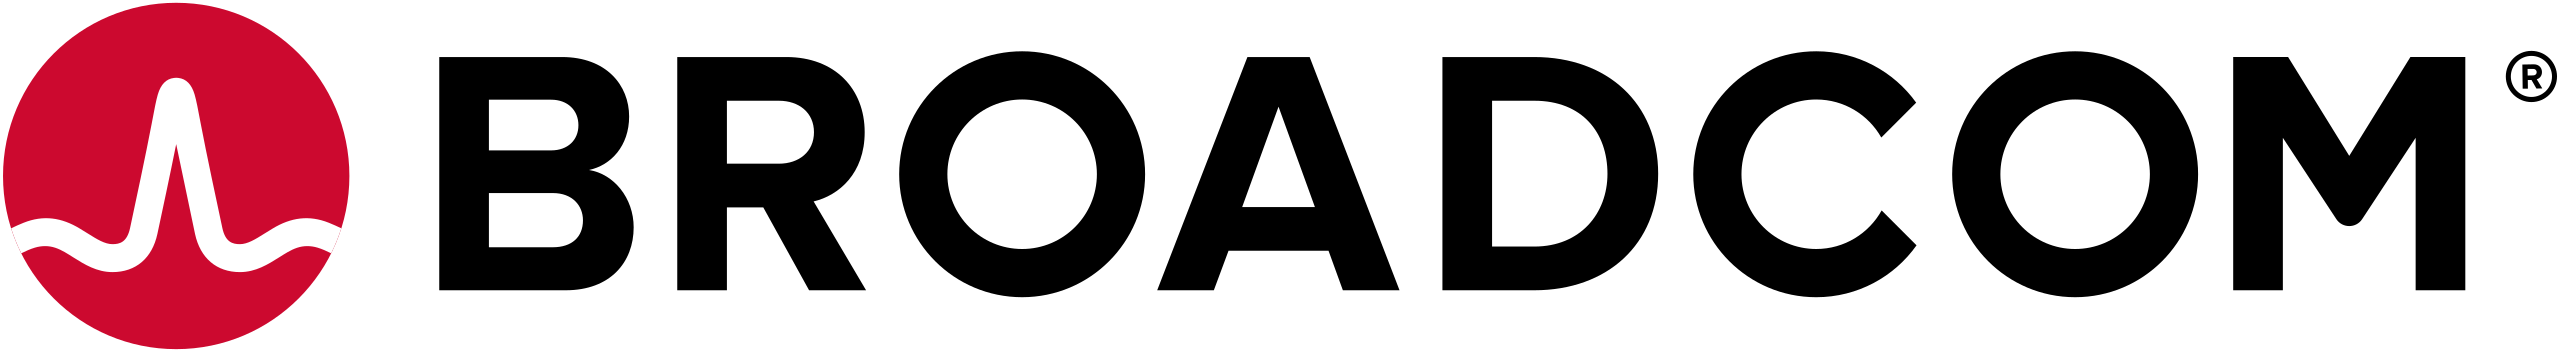 Broadcom Ltd Logo